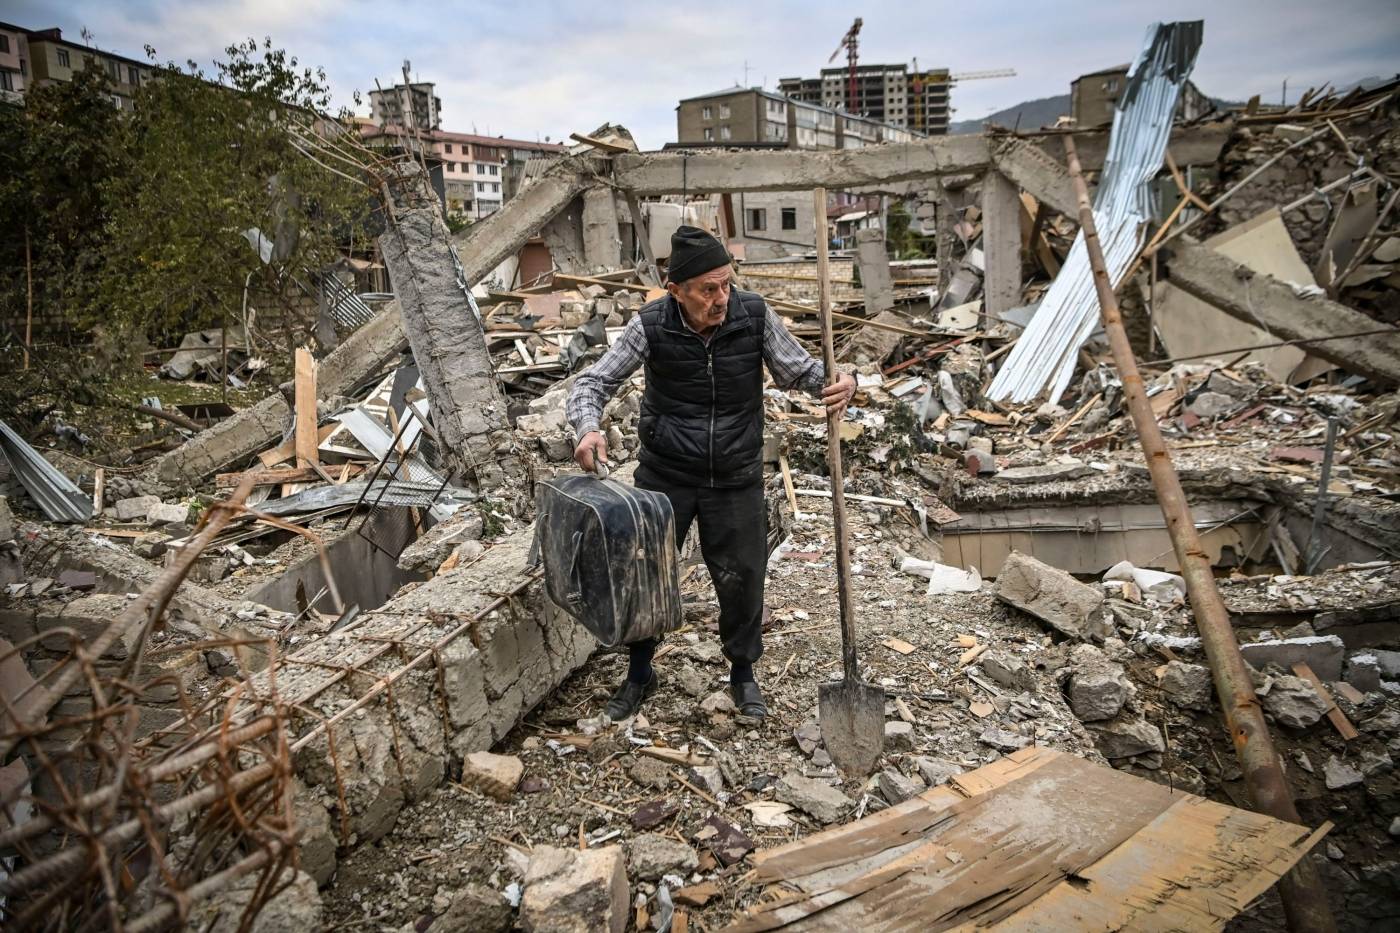 Deler av byen Stepanakert i Nagorno-Karabakh ligger i ruiner etter krigføring mellom Armenia og Aserbajdsjan i 2020. Foto: Aris Messinis/AFP/NTB.